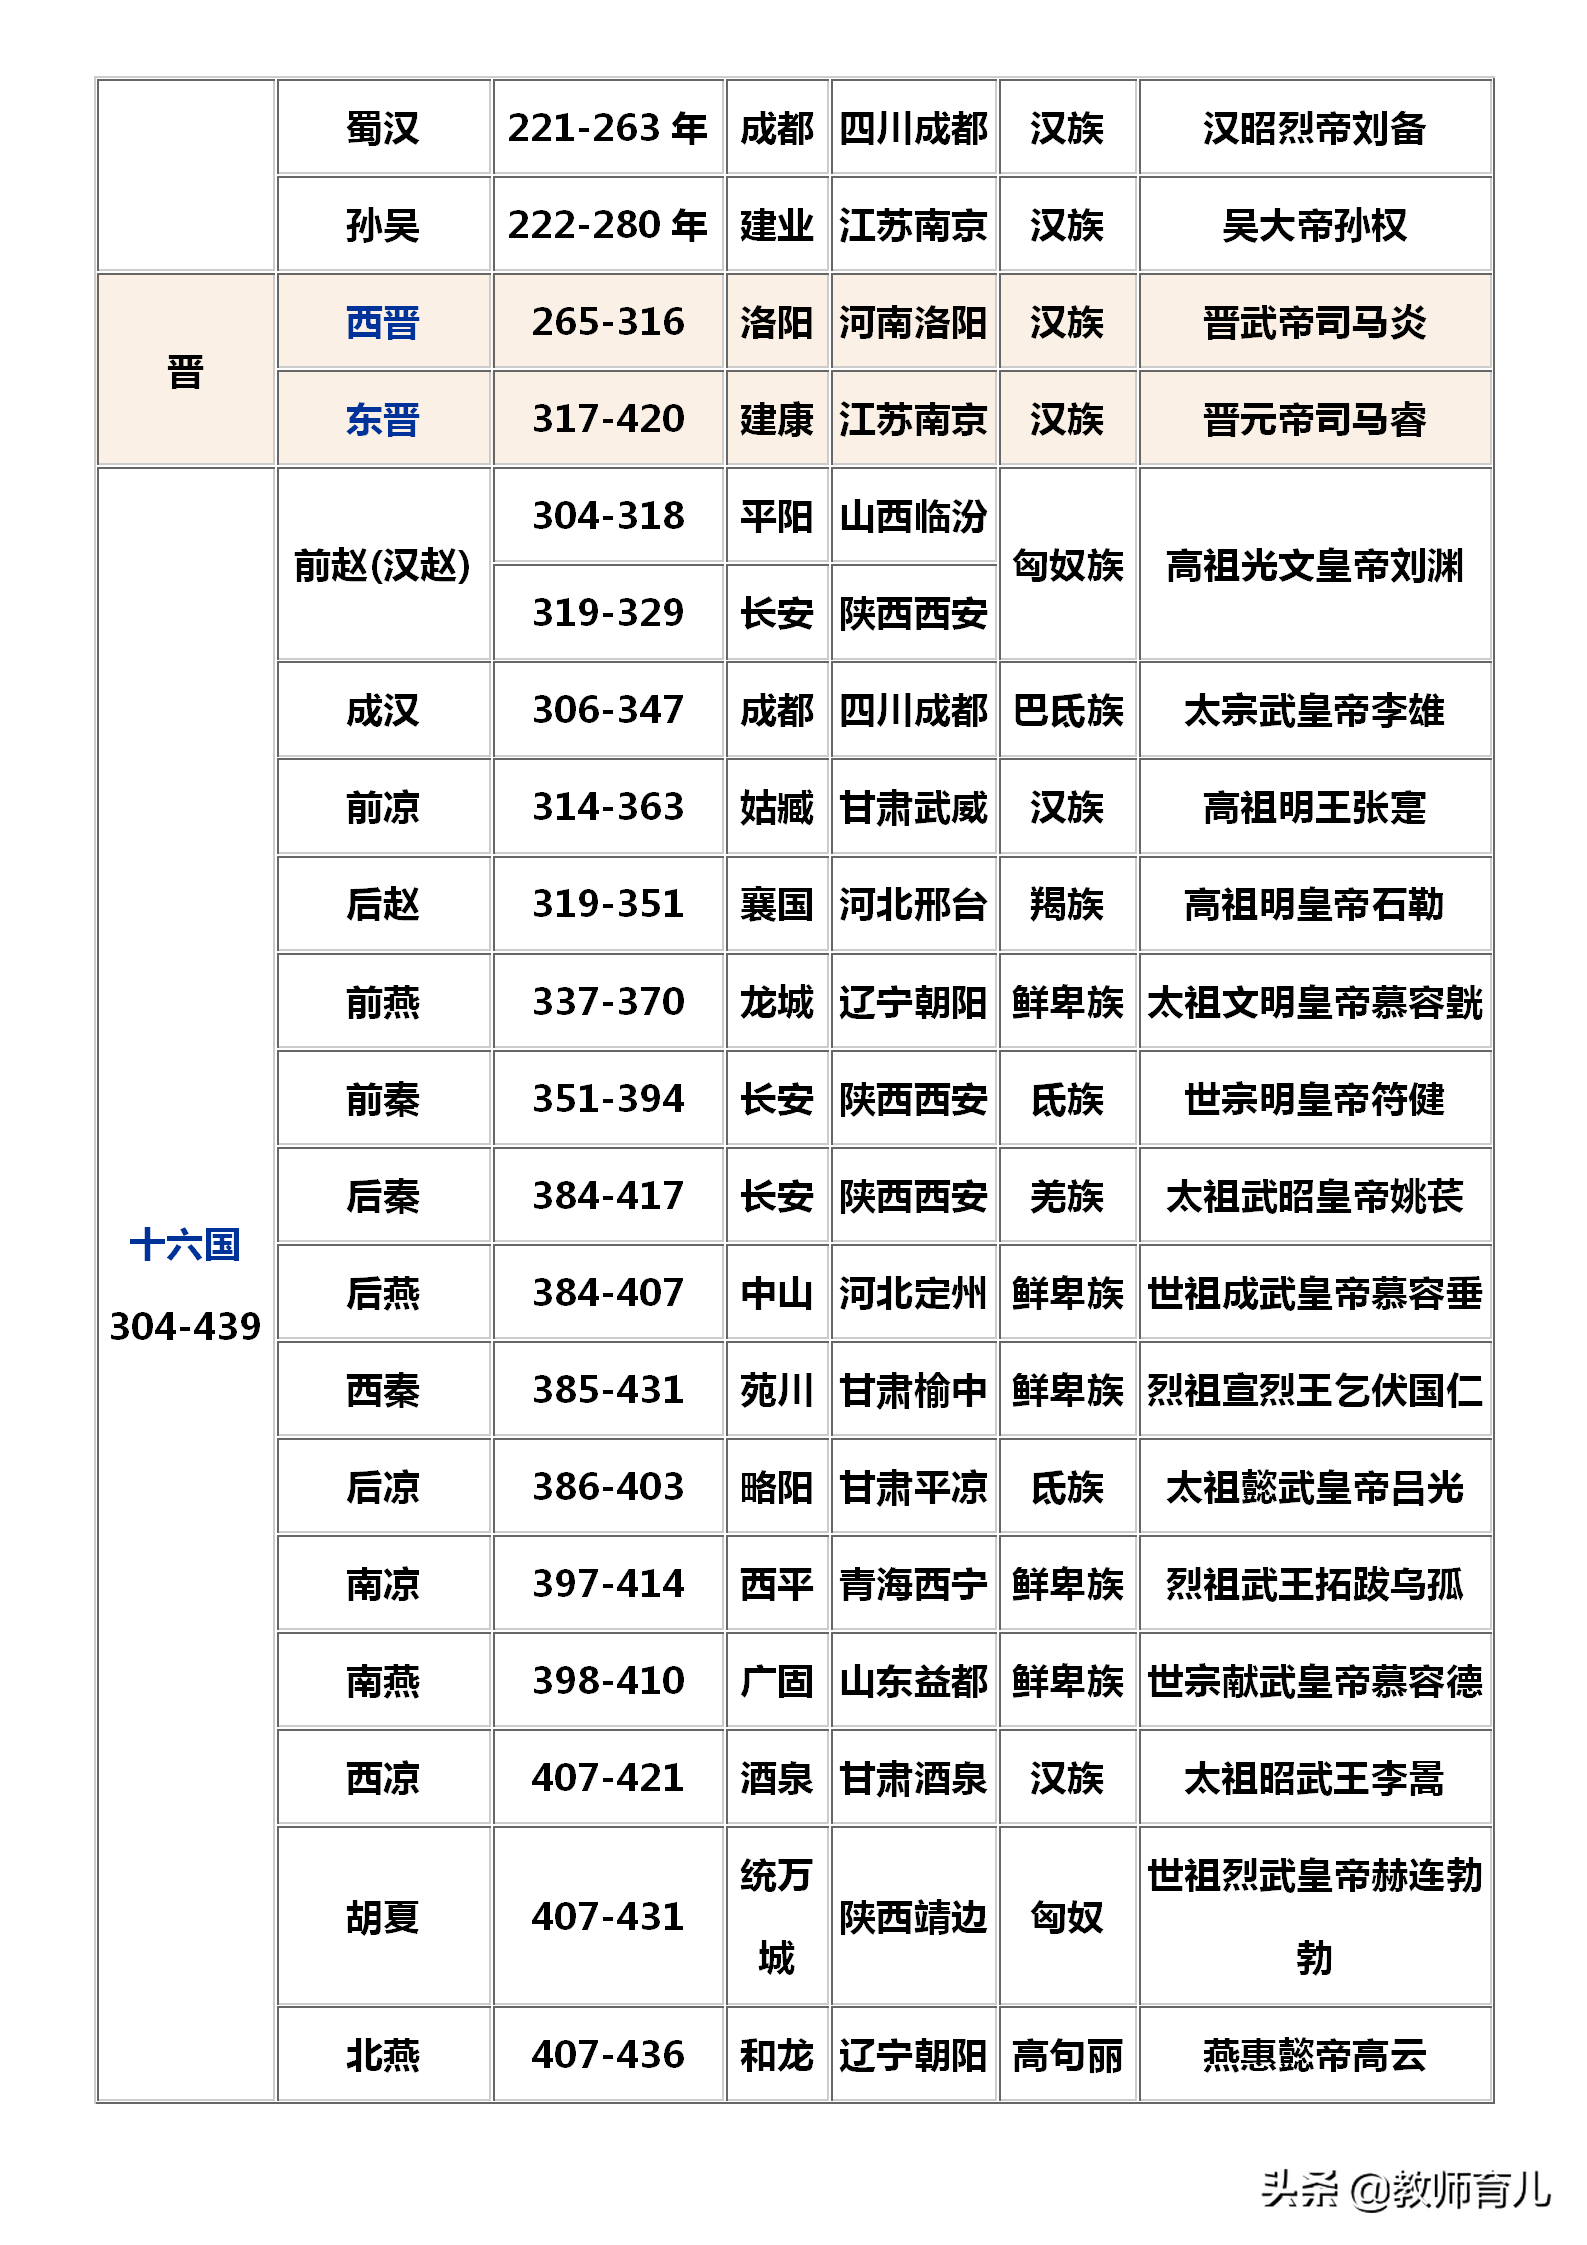 中国历史朝代顺序表背诵口诀 中国历史朝代顺序表顺口溜